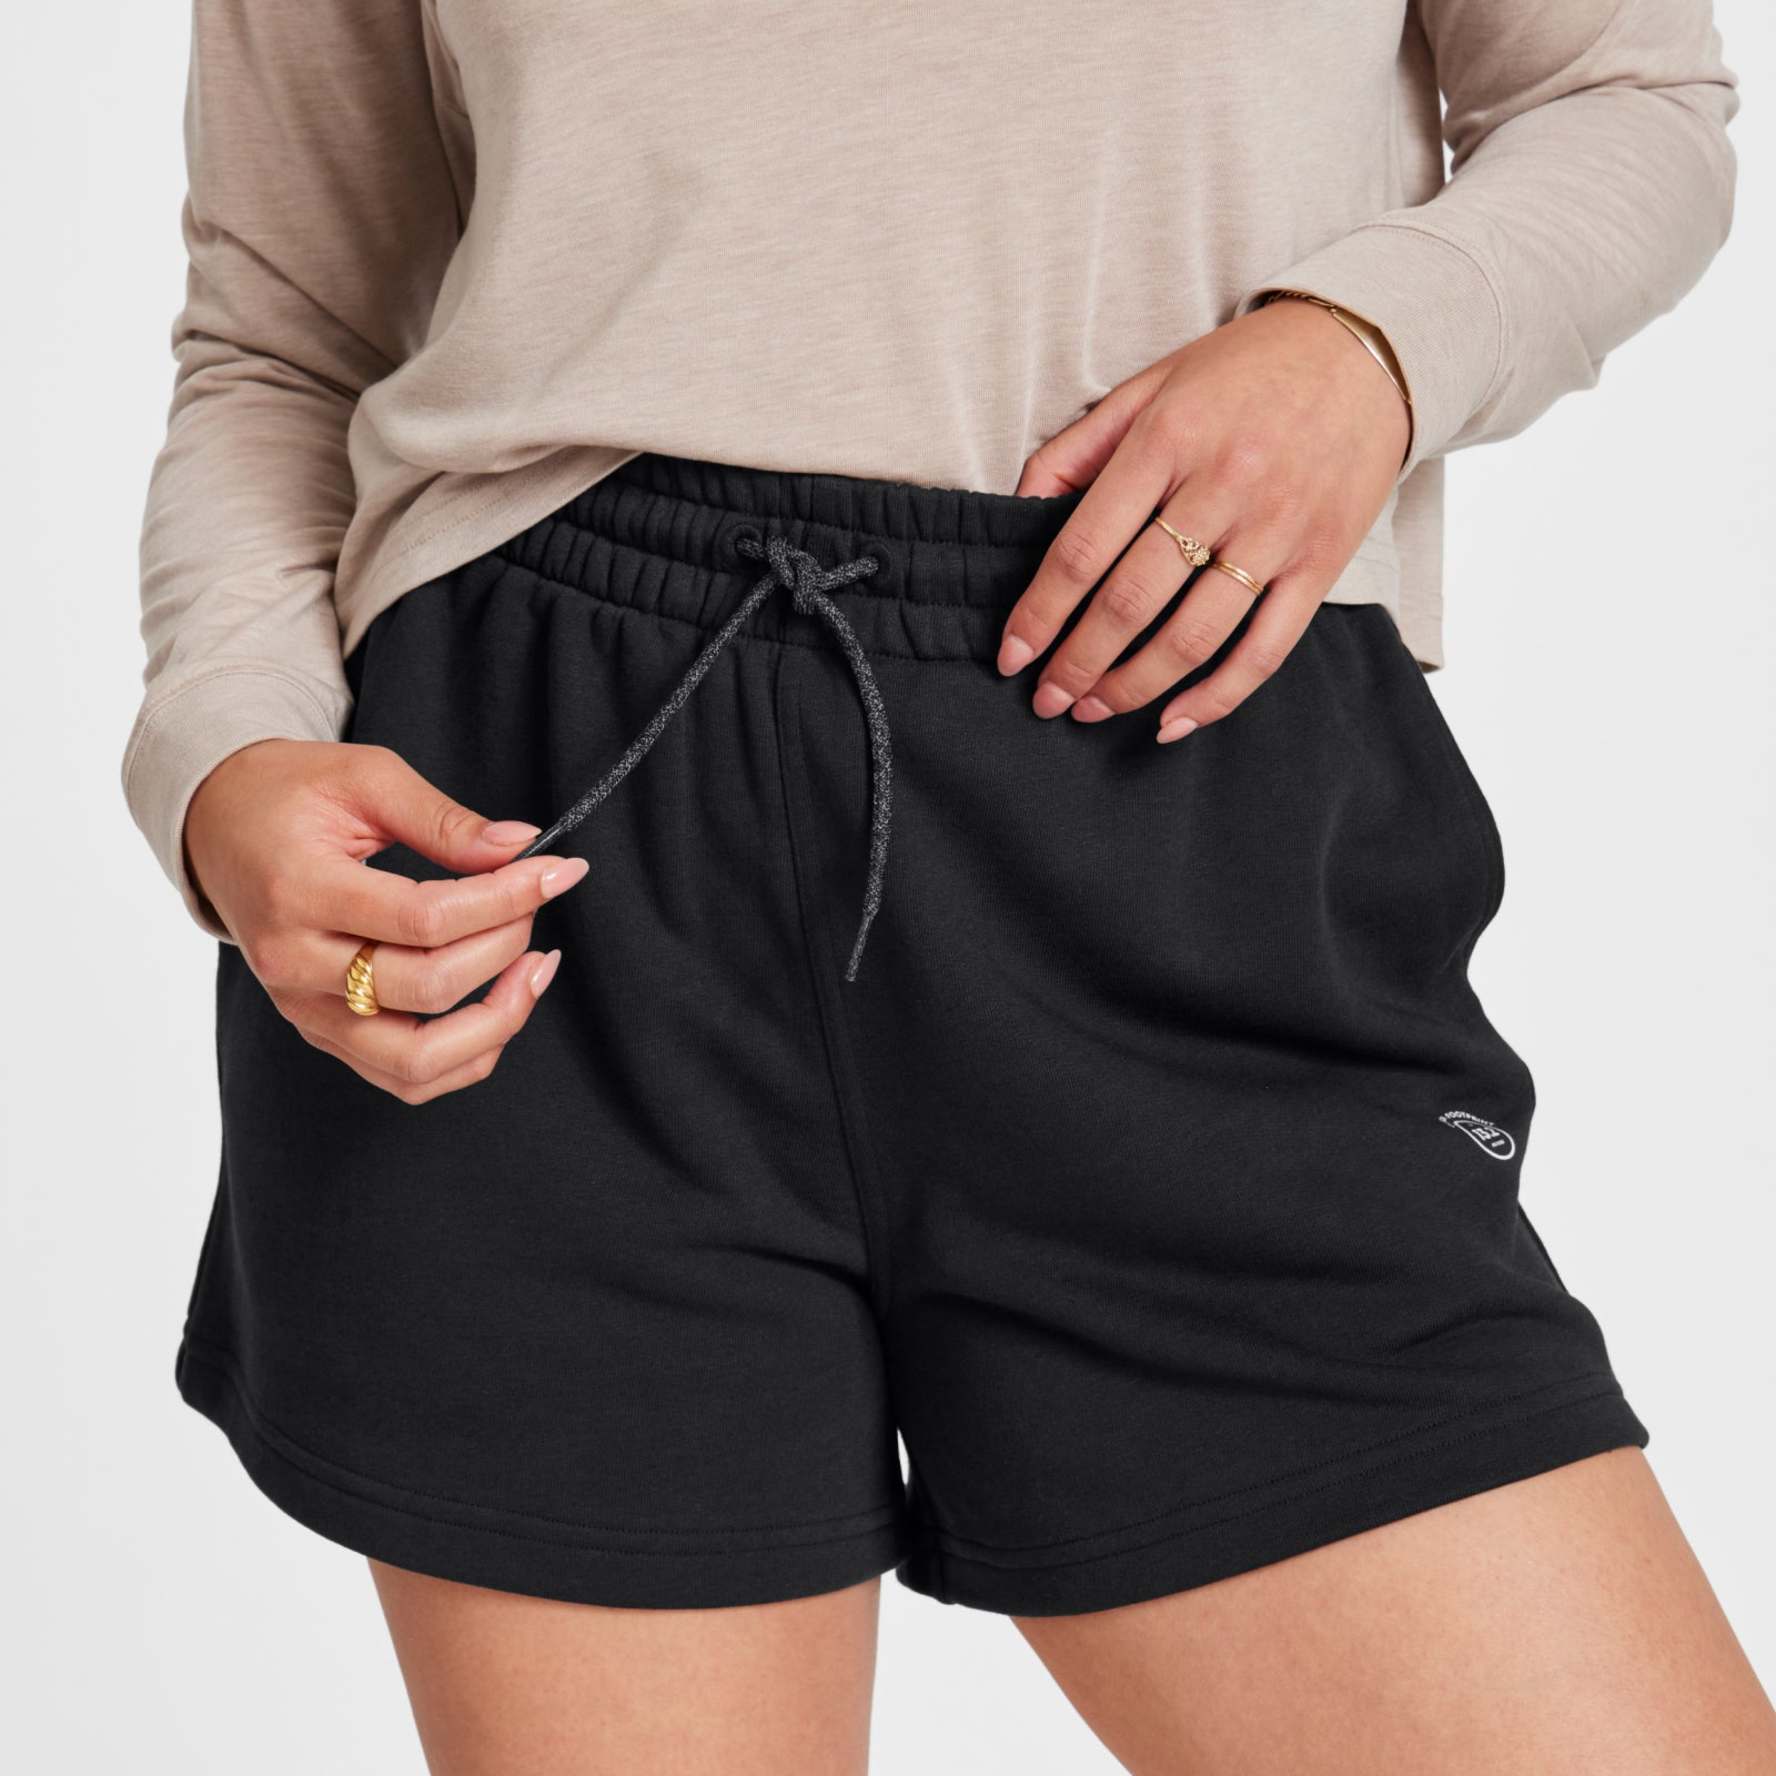 Black Shorts For Women